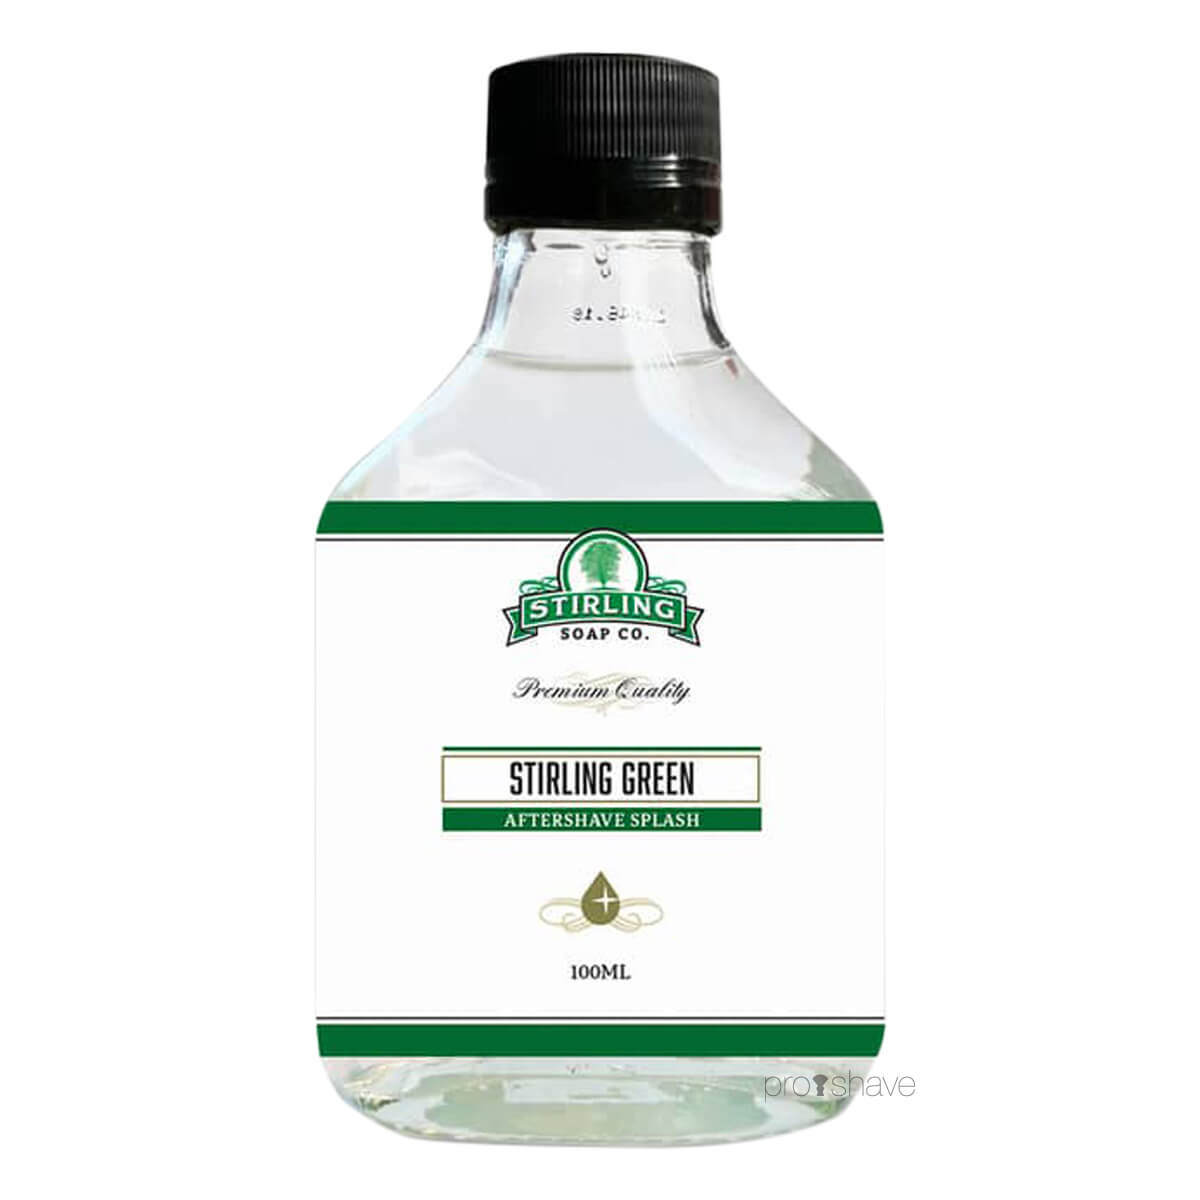 Stirling Soap Co. Aftershave Splash, Stirling Green, 100 ml.